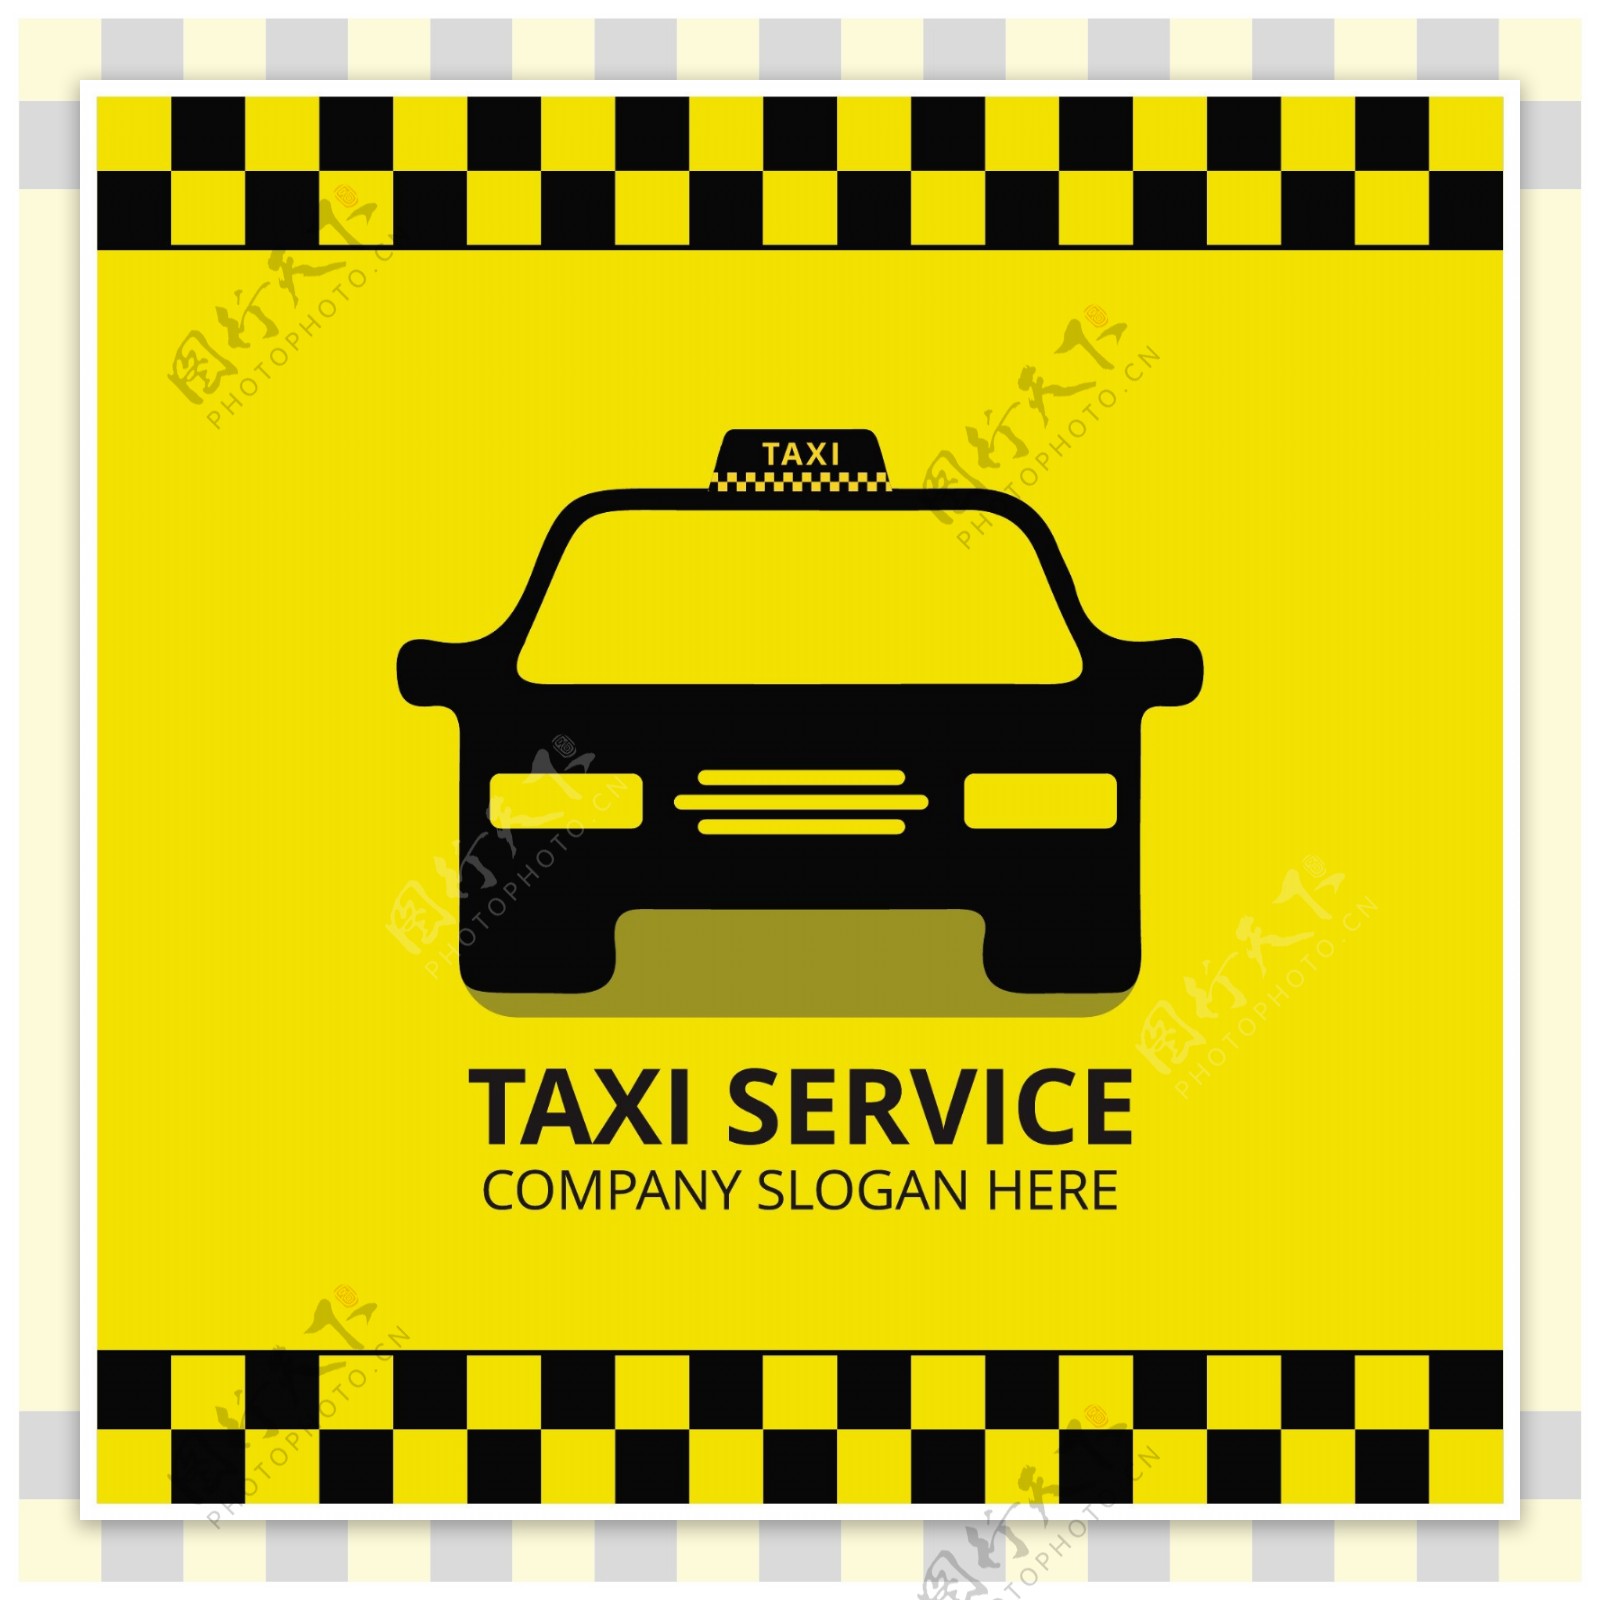 出租车的标识设计模板